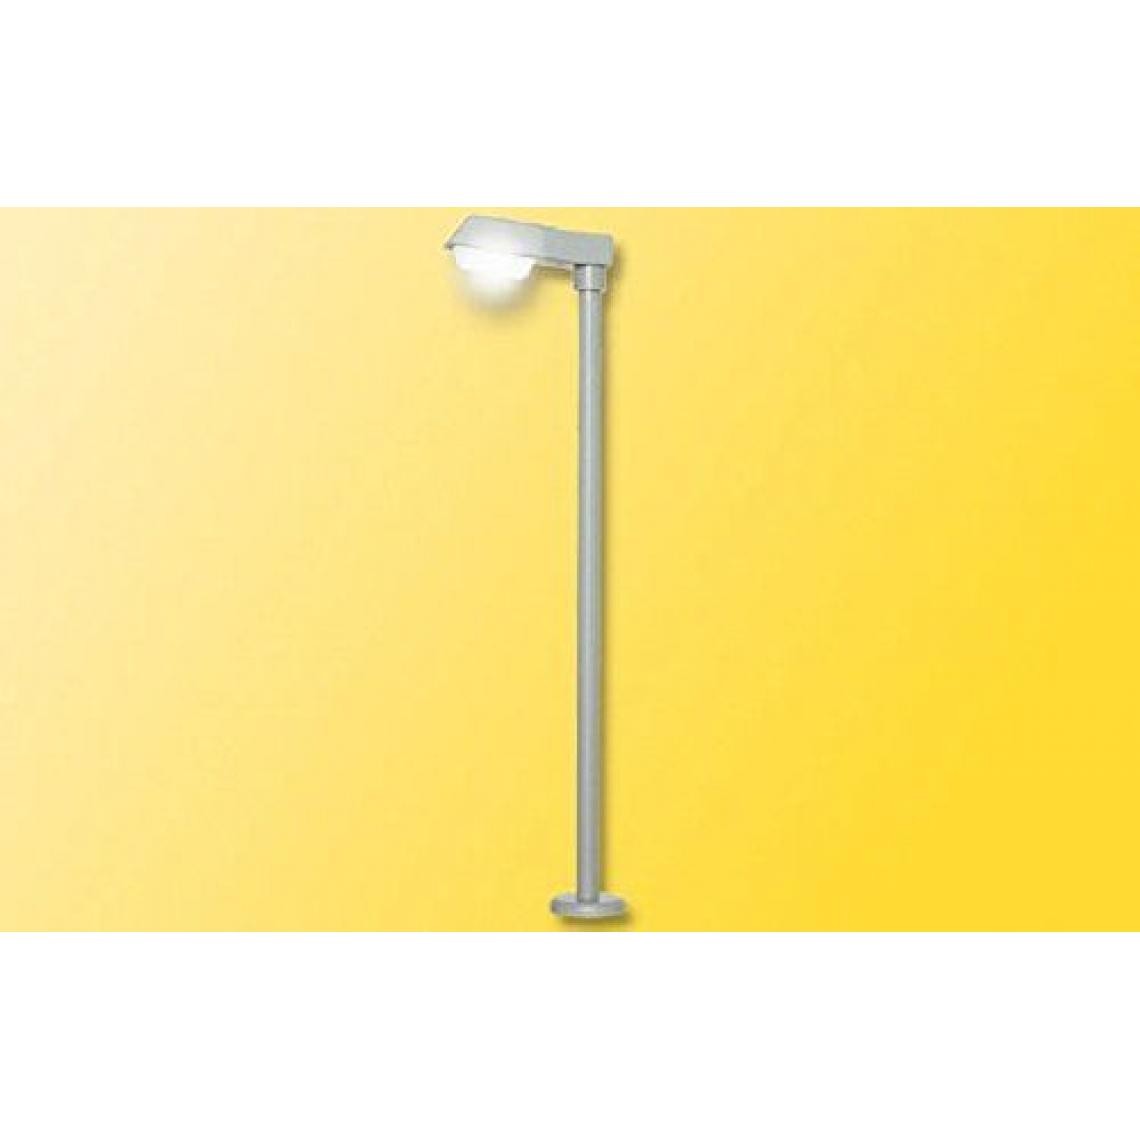 Inconnu - Lampes VIESSMANN 6992 H0 - Accessoires et pièces